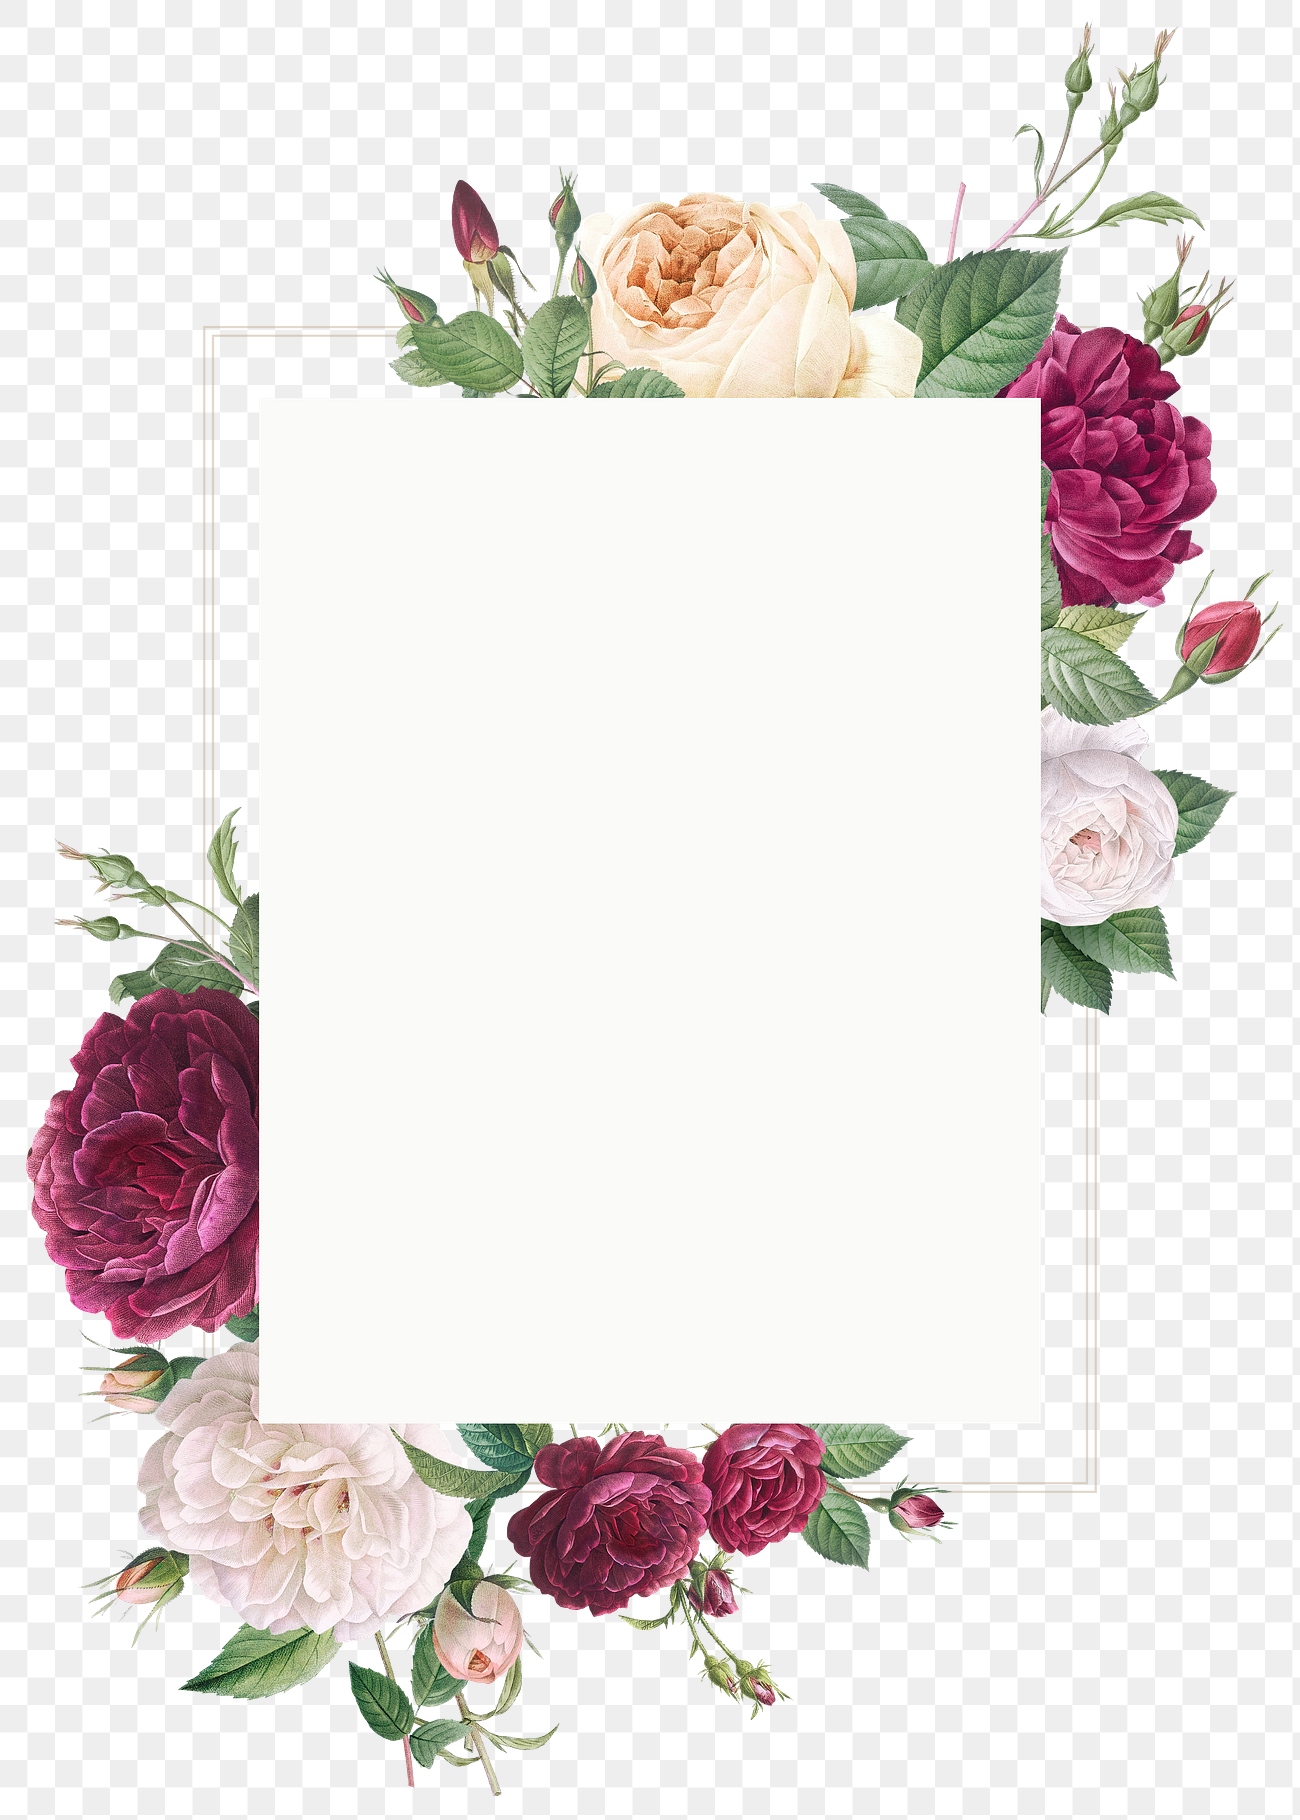 Download Floral design wedding invitation mockup | Royalty free stock transparent png - 581116